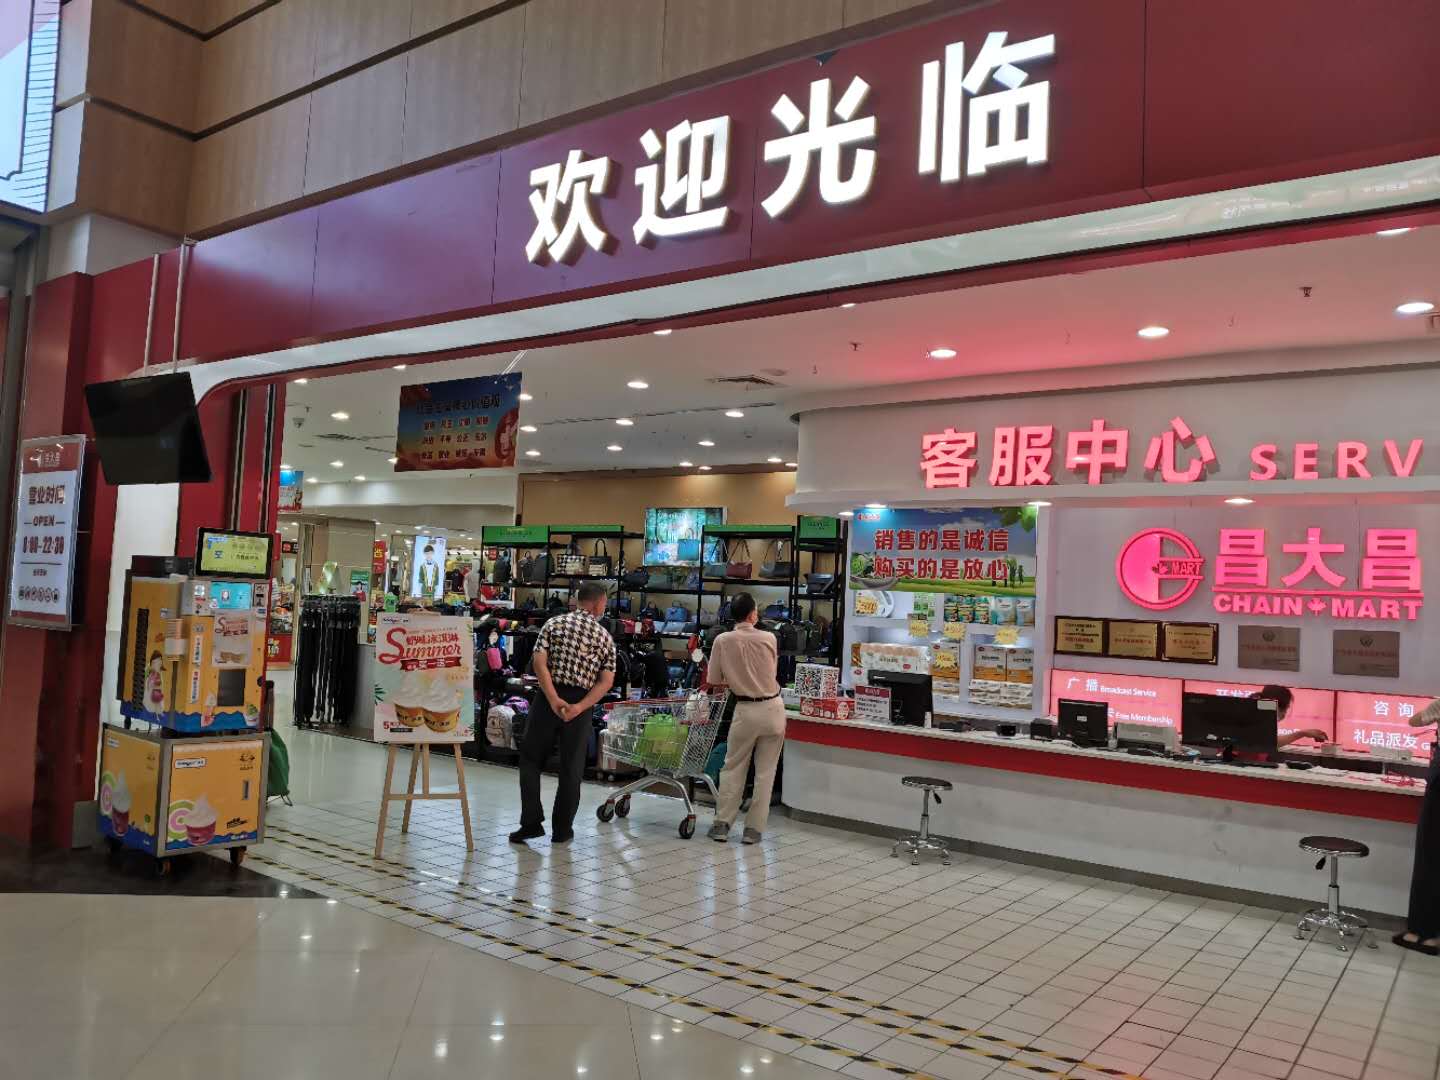 Máquina de venda automática de sorvetes operada por moeda